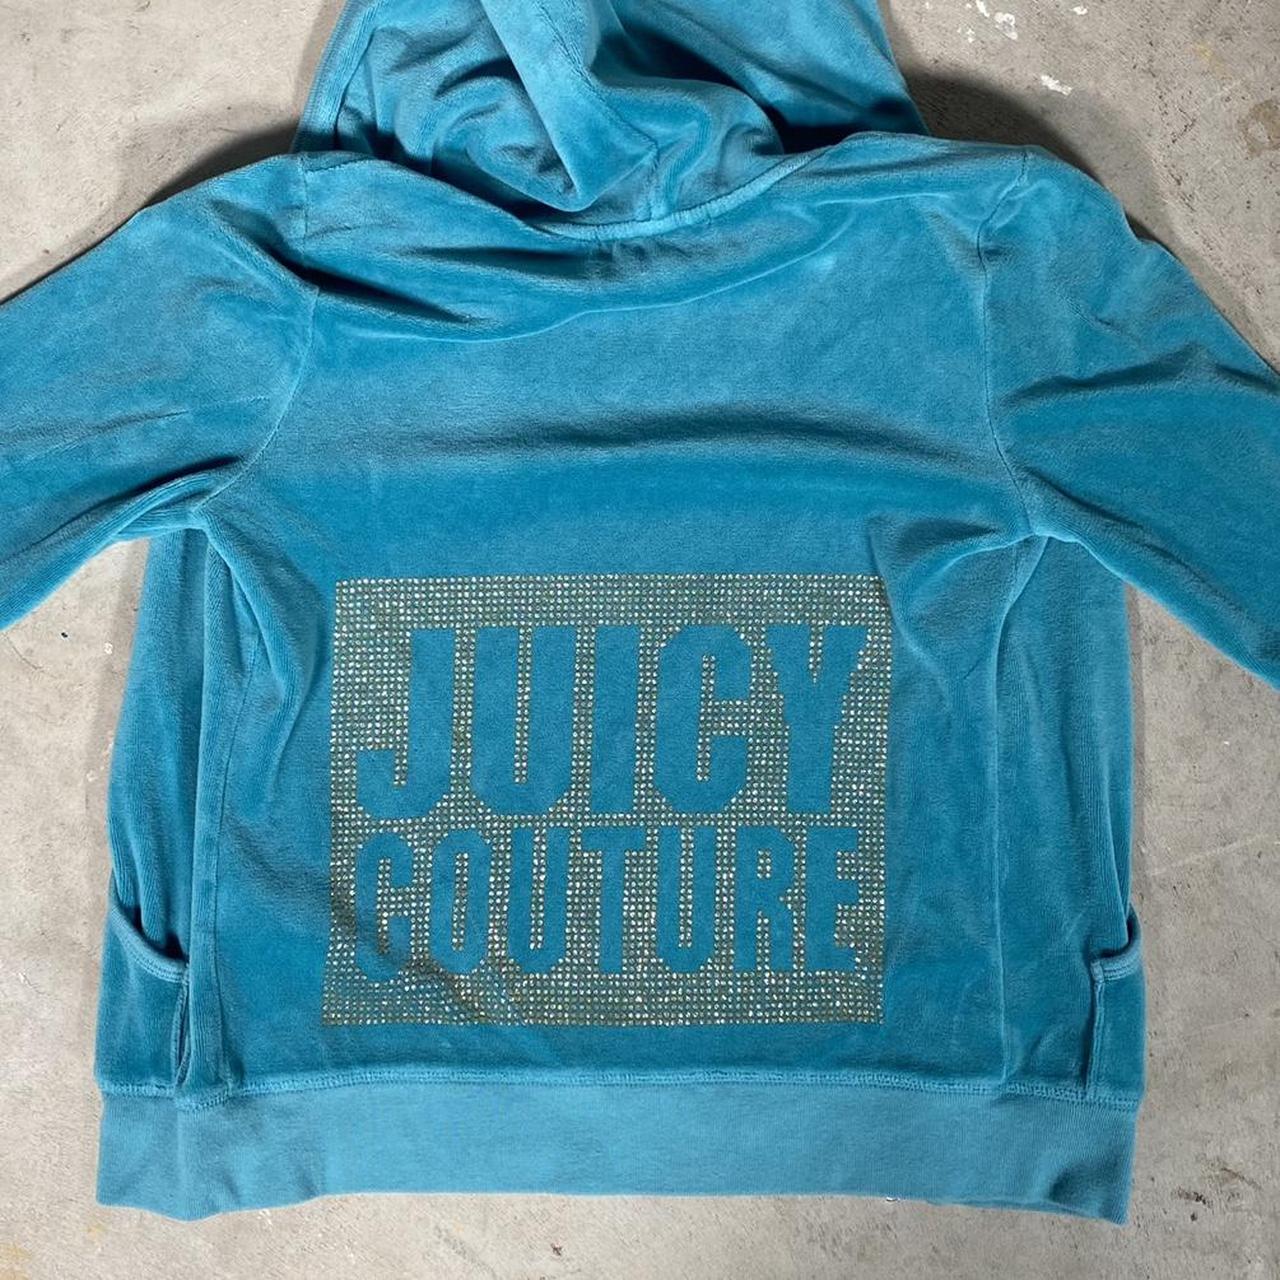 Juicy Couture Women's Blue Sweatshirt | Depop